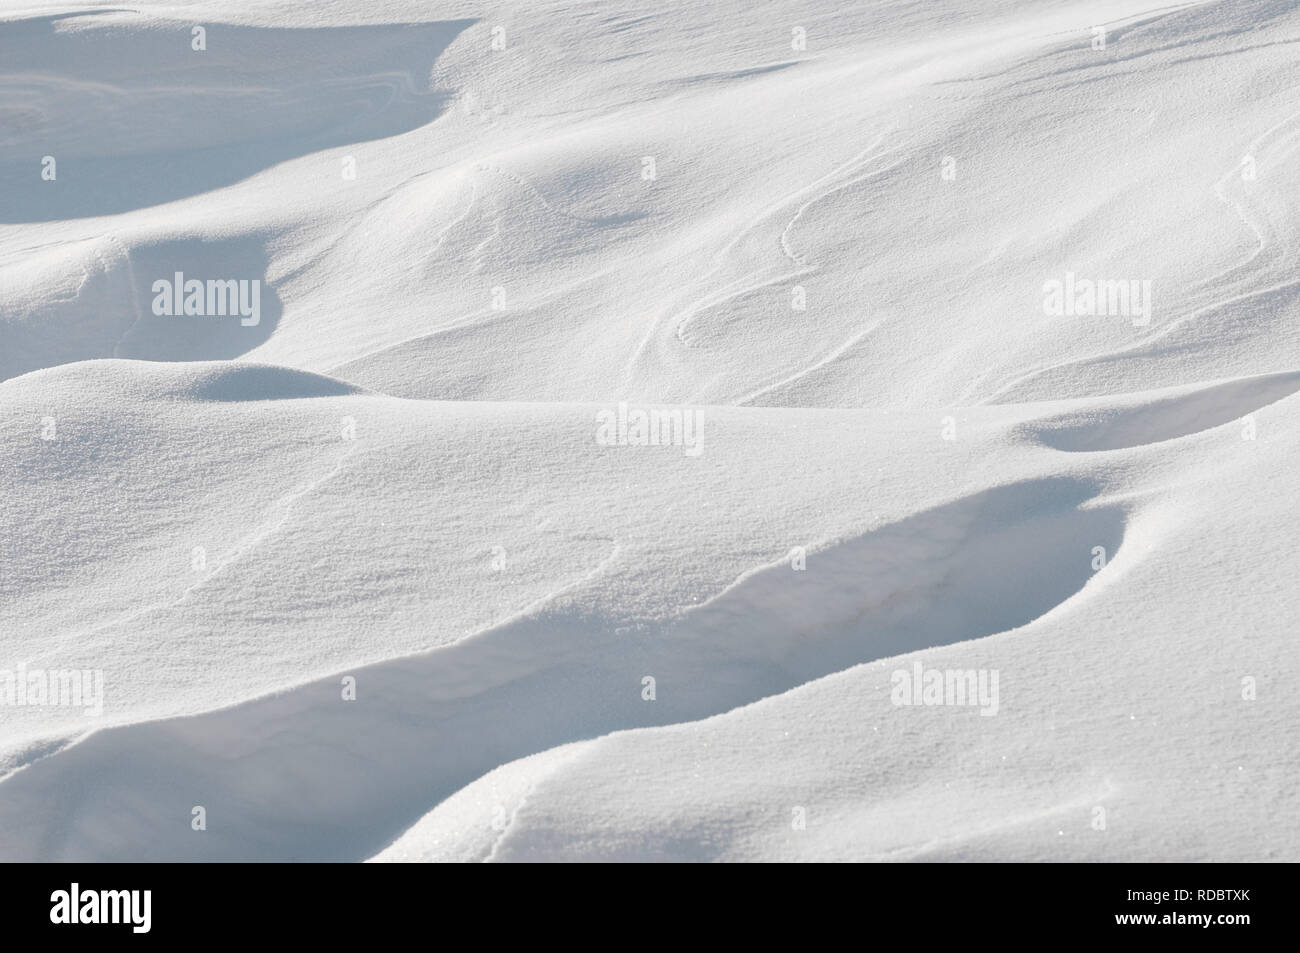 Paysage avec la neige blanc hiver.fond avec copie espace pour le texte. Orientation horizontale. Banque D'Images